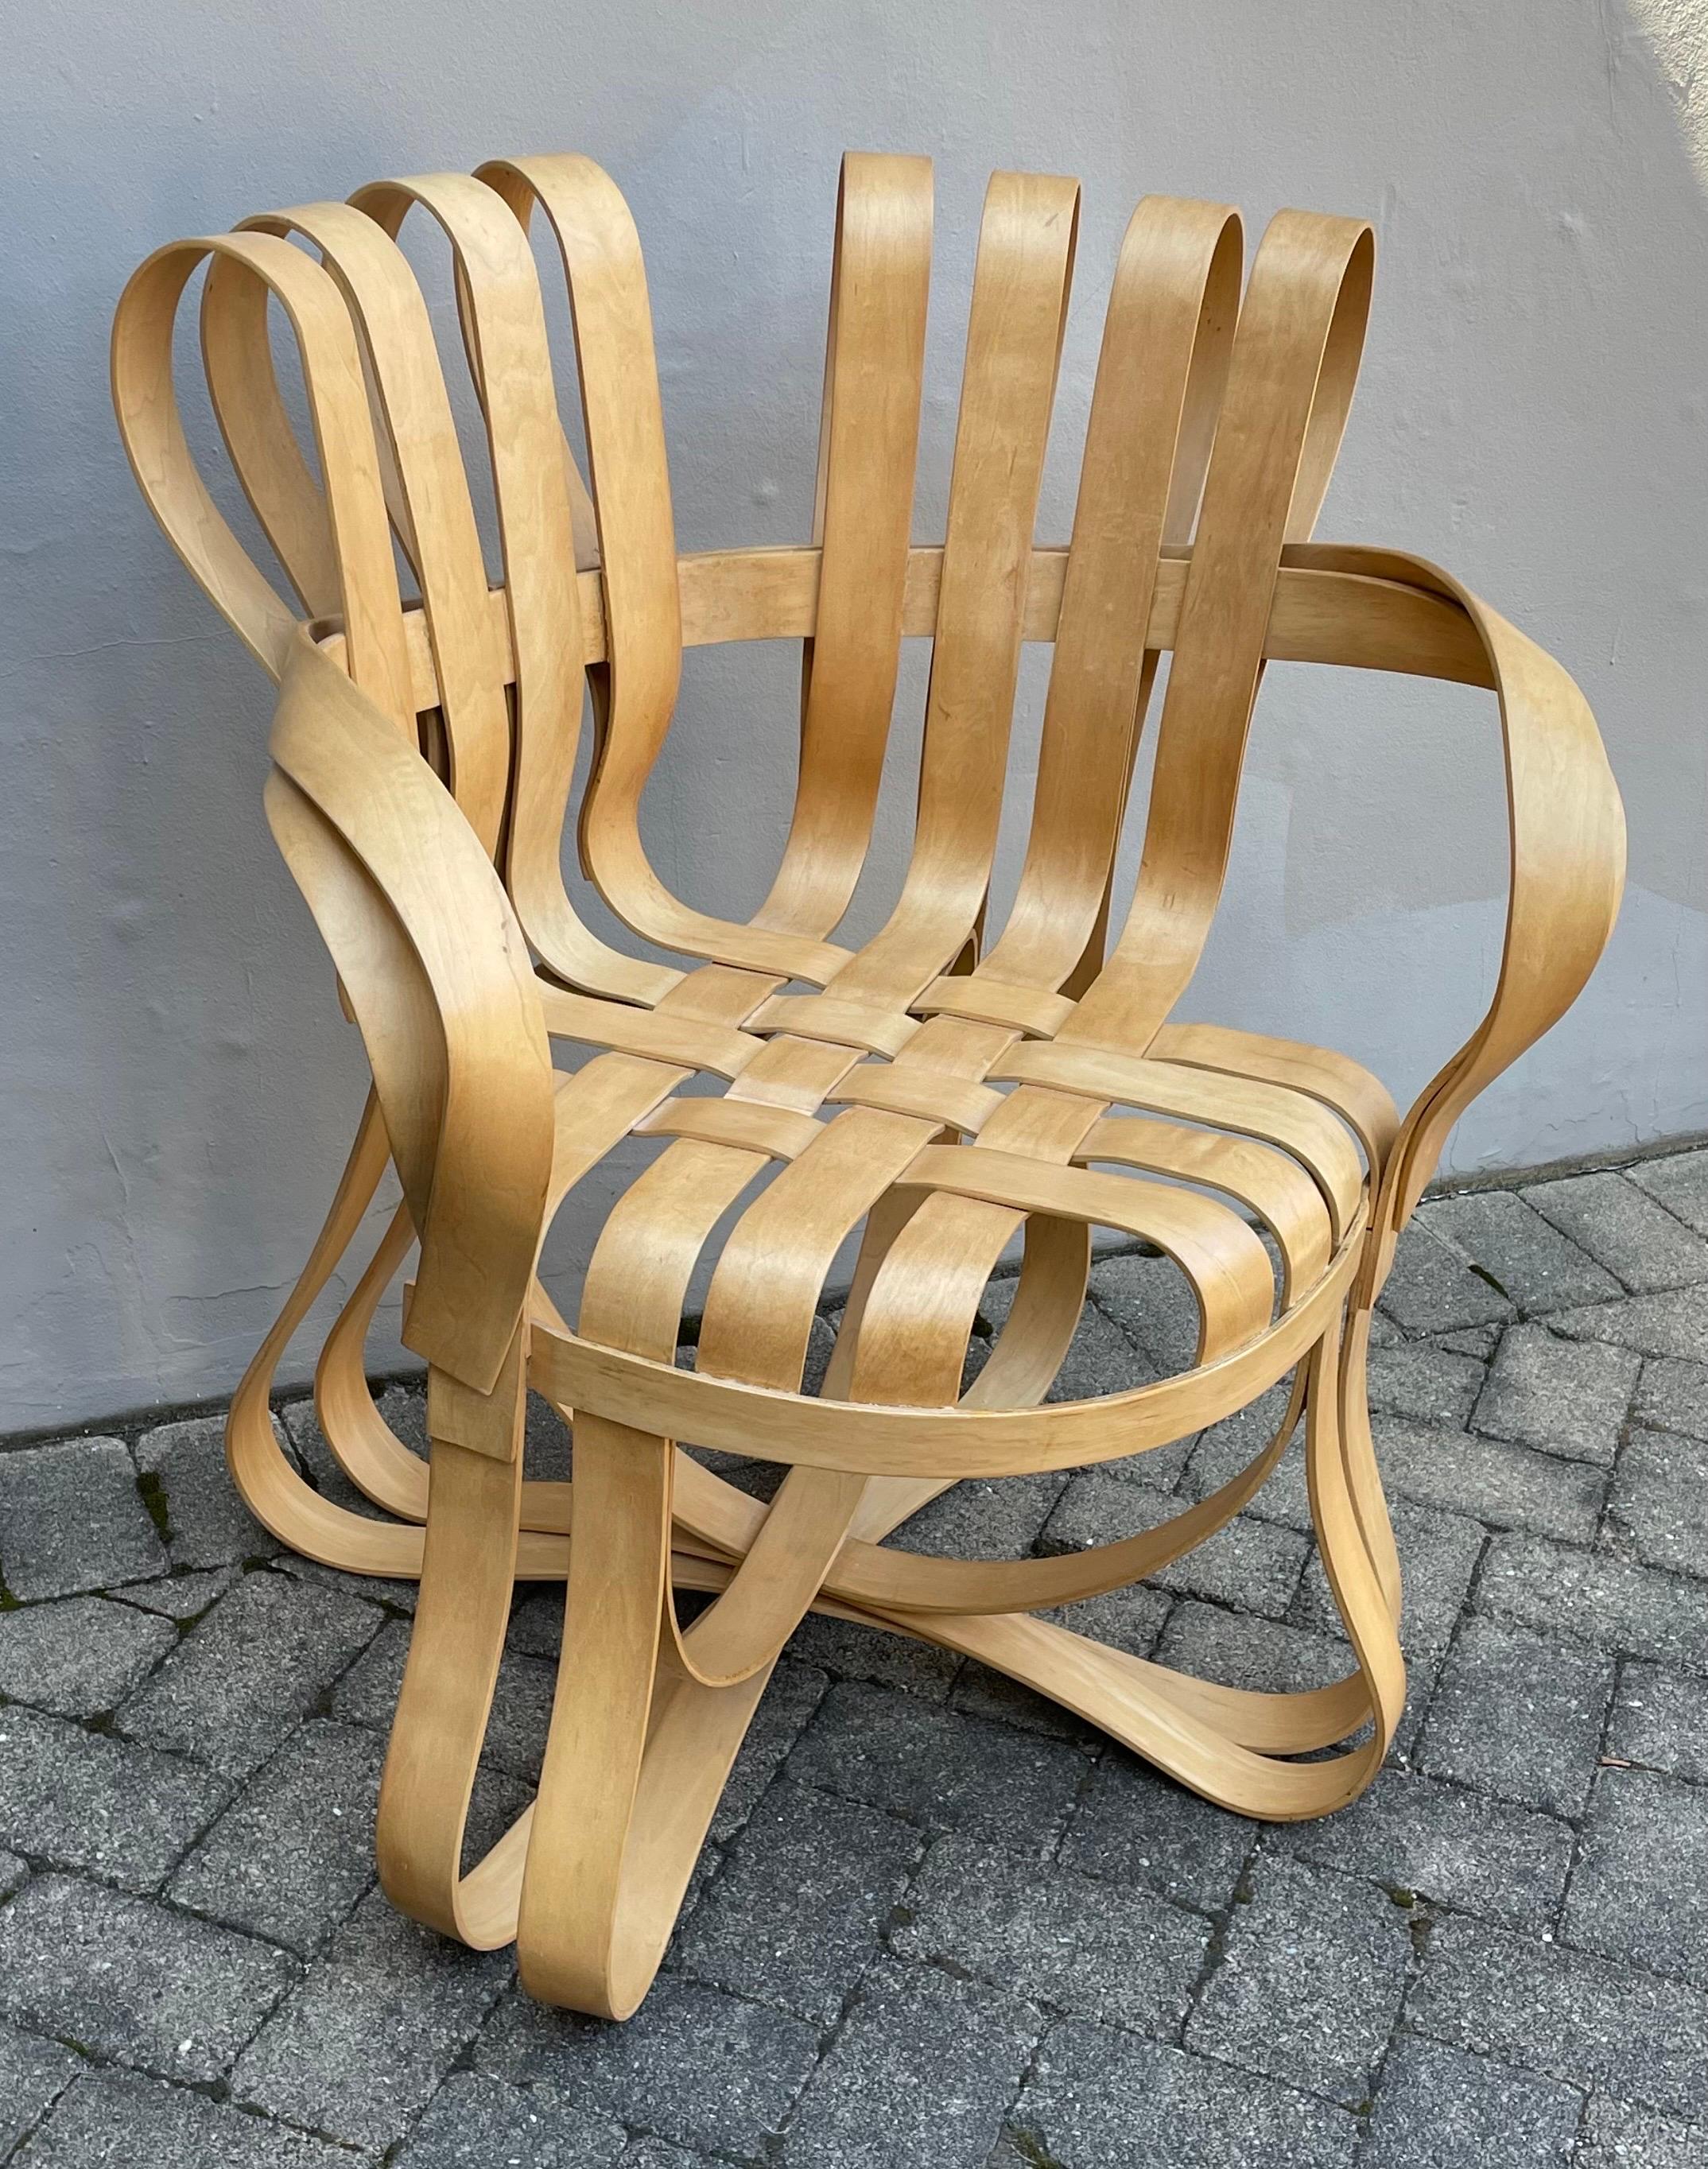 Inspiré par les caisses de pommes sur lesquelles il jouait lorsqu'il était enfant, l'architecte Frank Gehry, lauréat du prix Pritzker, a créé le design en forme de ruban de la chaise Cross Check avec des bandes d'érable entrelacées. Le design